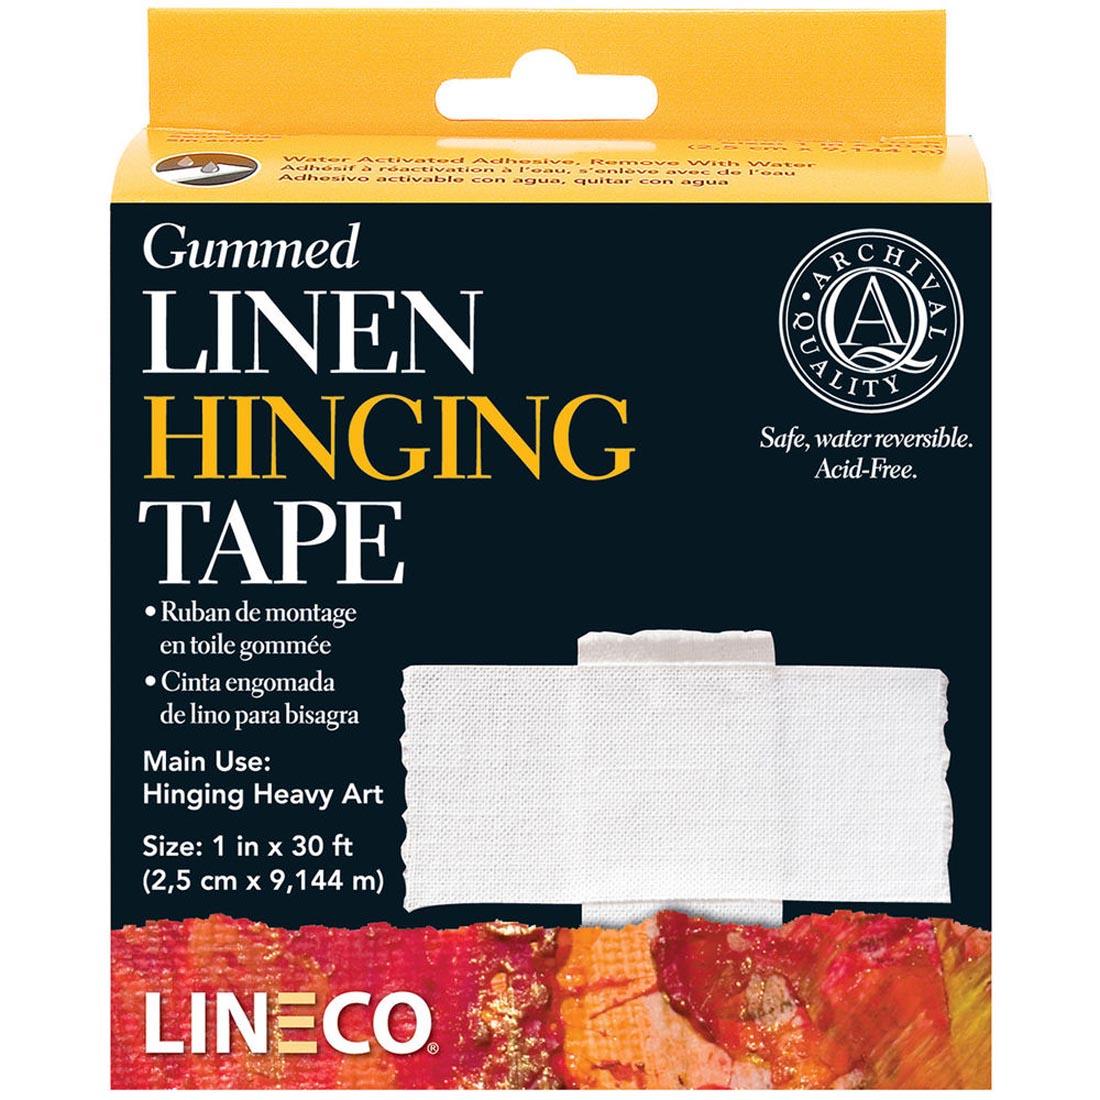 Lineco Neutral pH Gummed Linen Hinging Tape